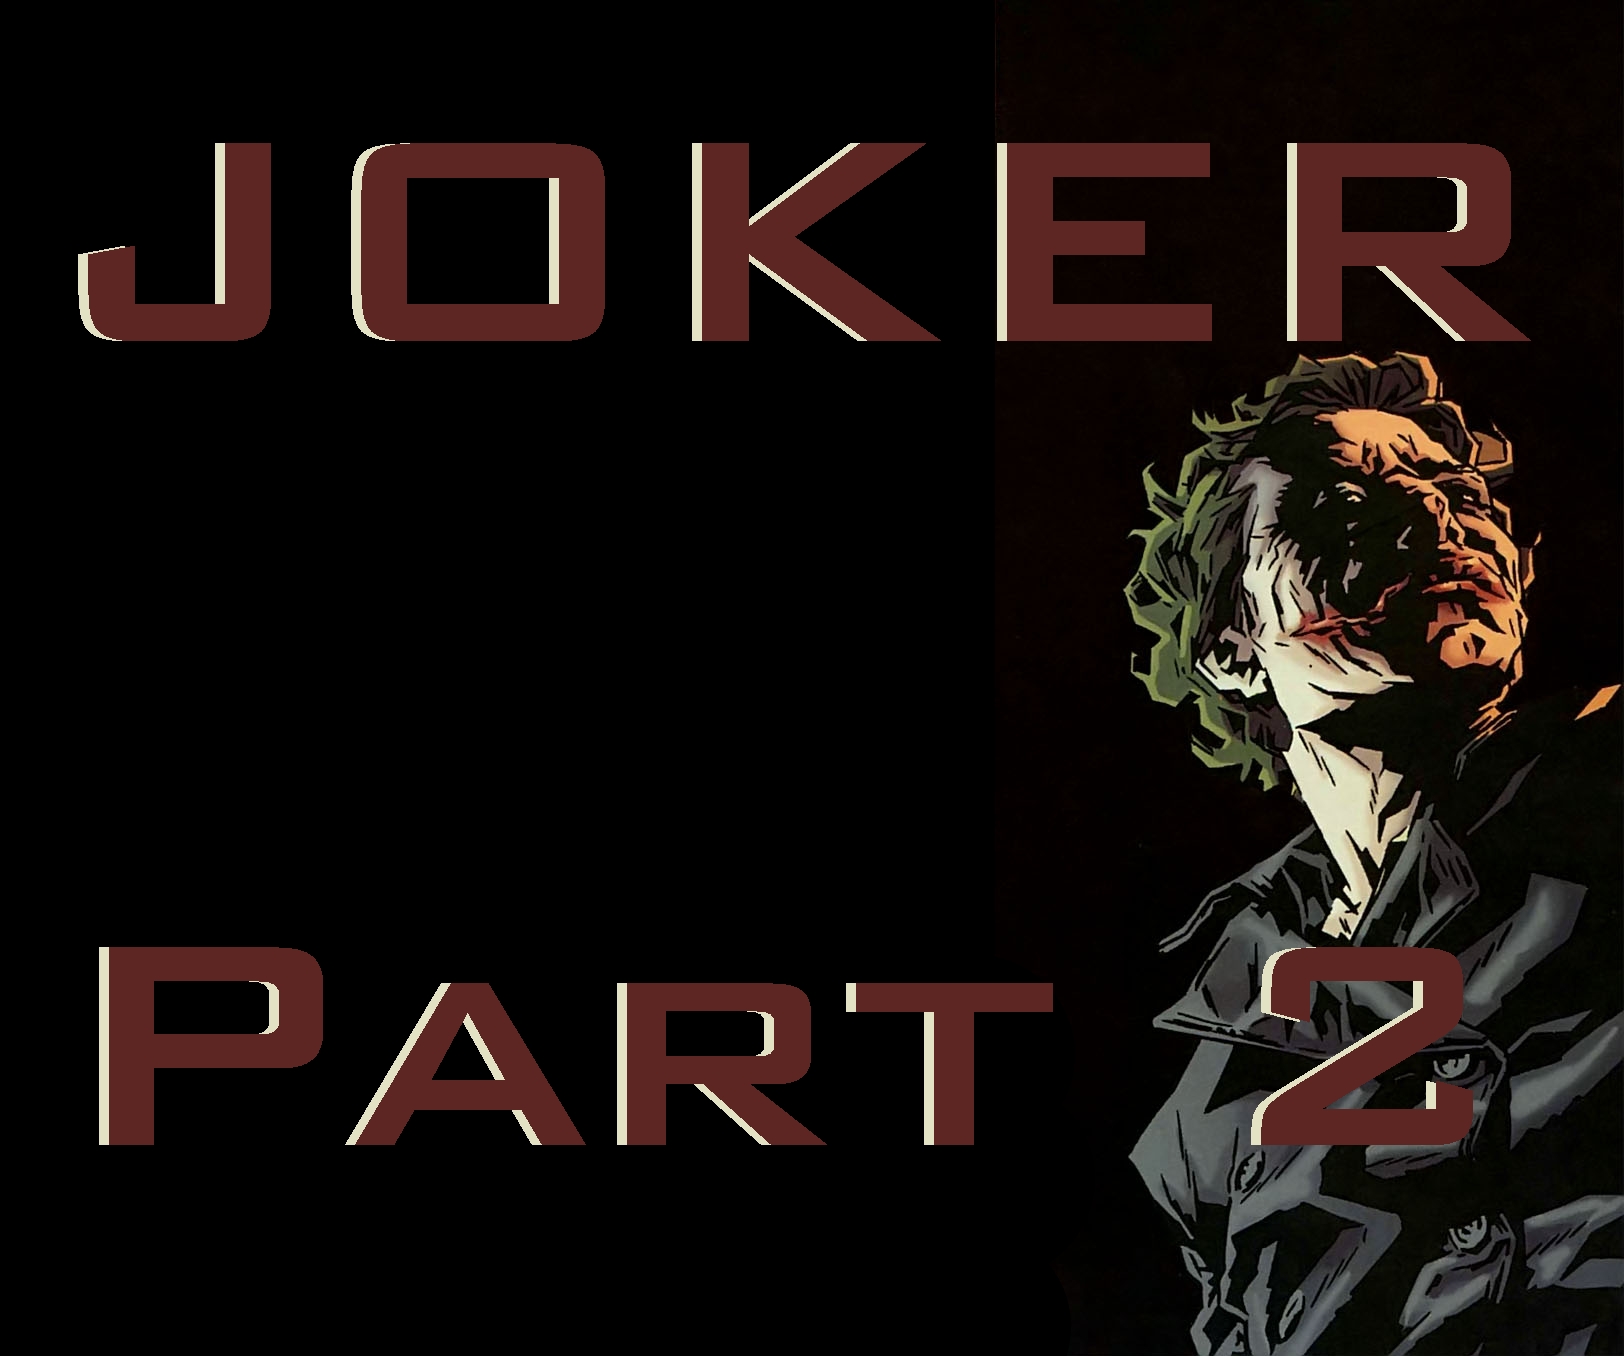 The Joker - 2 of 4